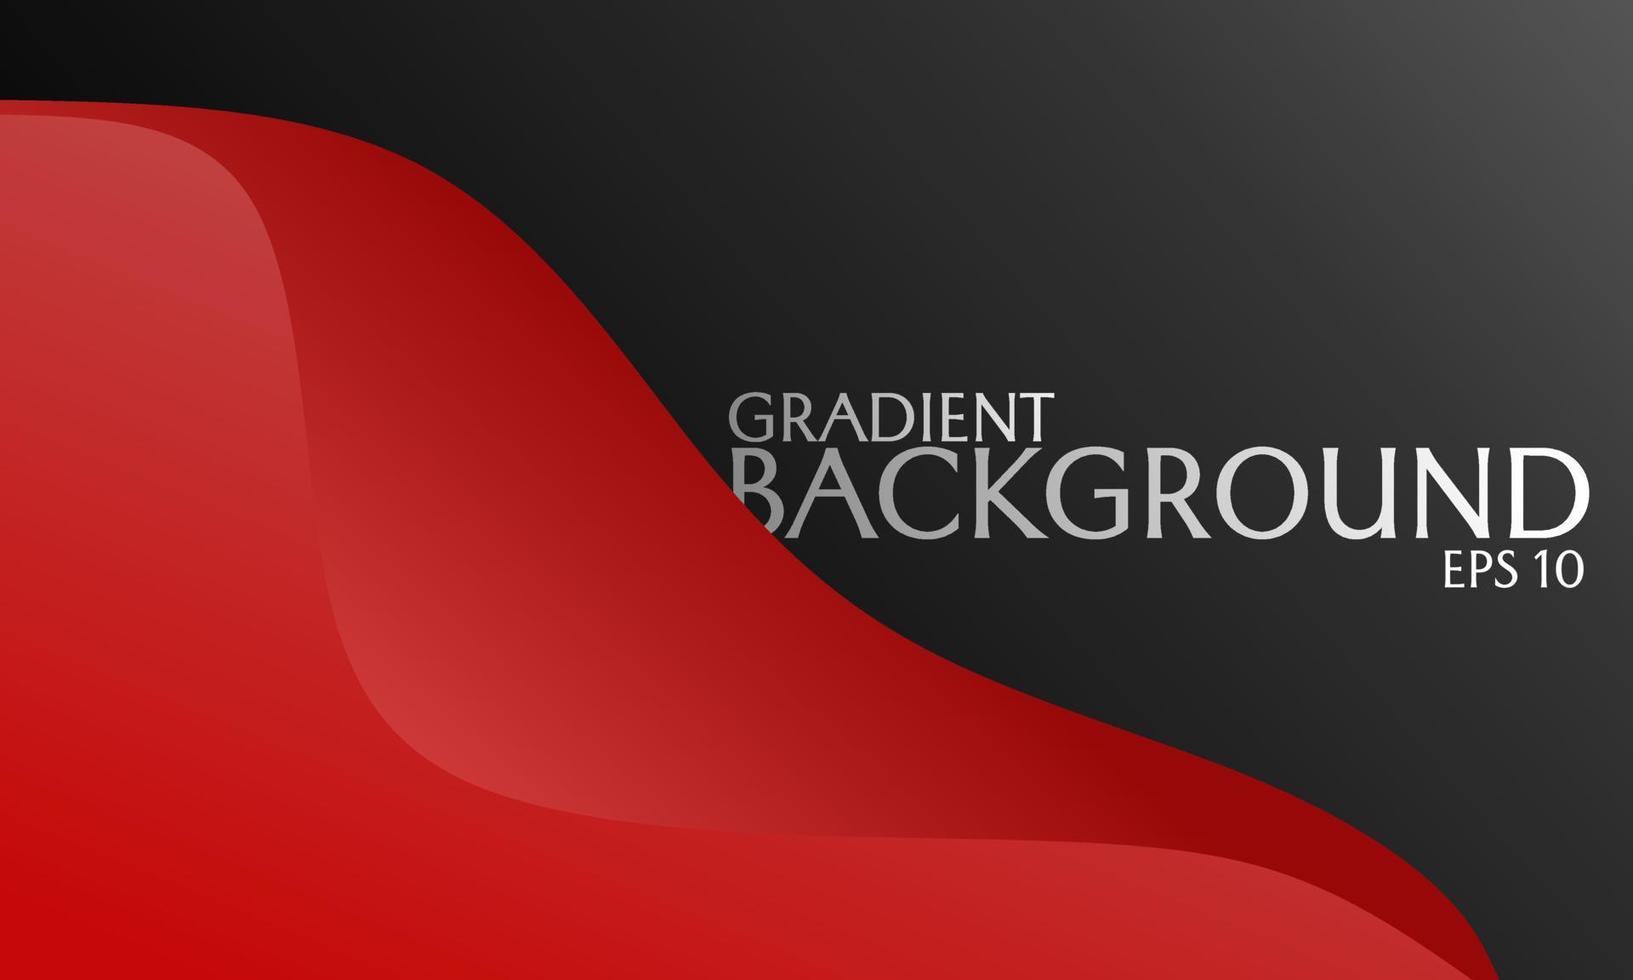 svart bakgrund täckt i rött. gradient design med böjt mönster. används för banner, affisch och flyer design vektor